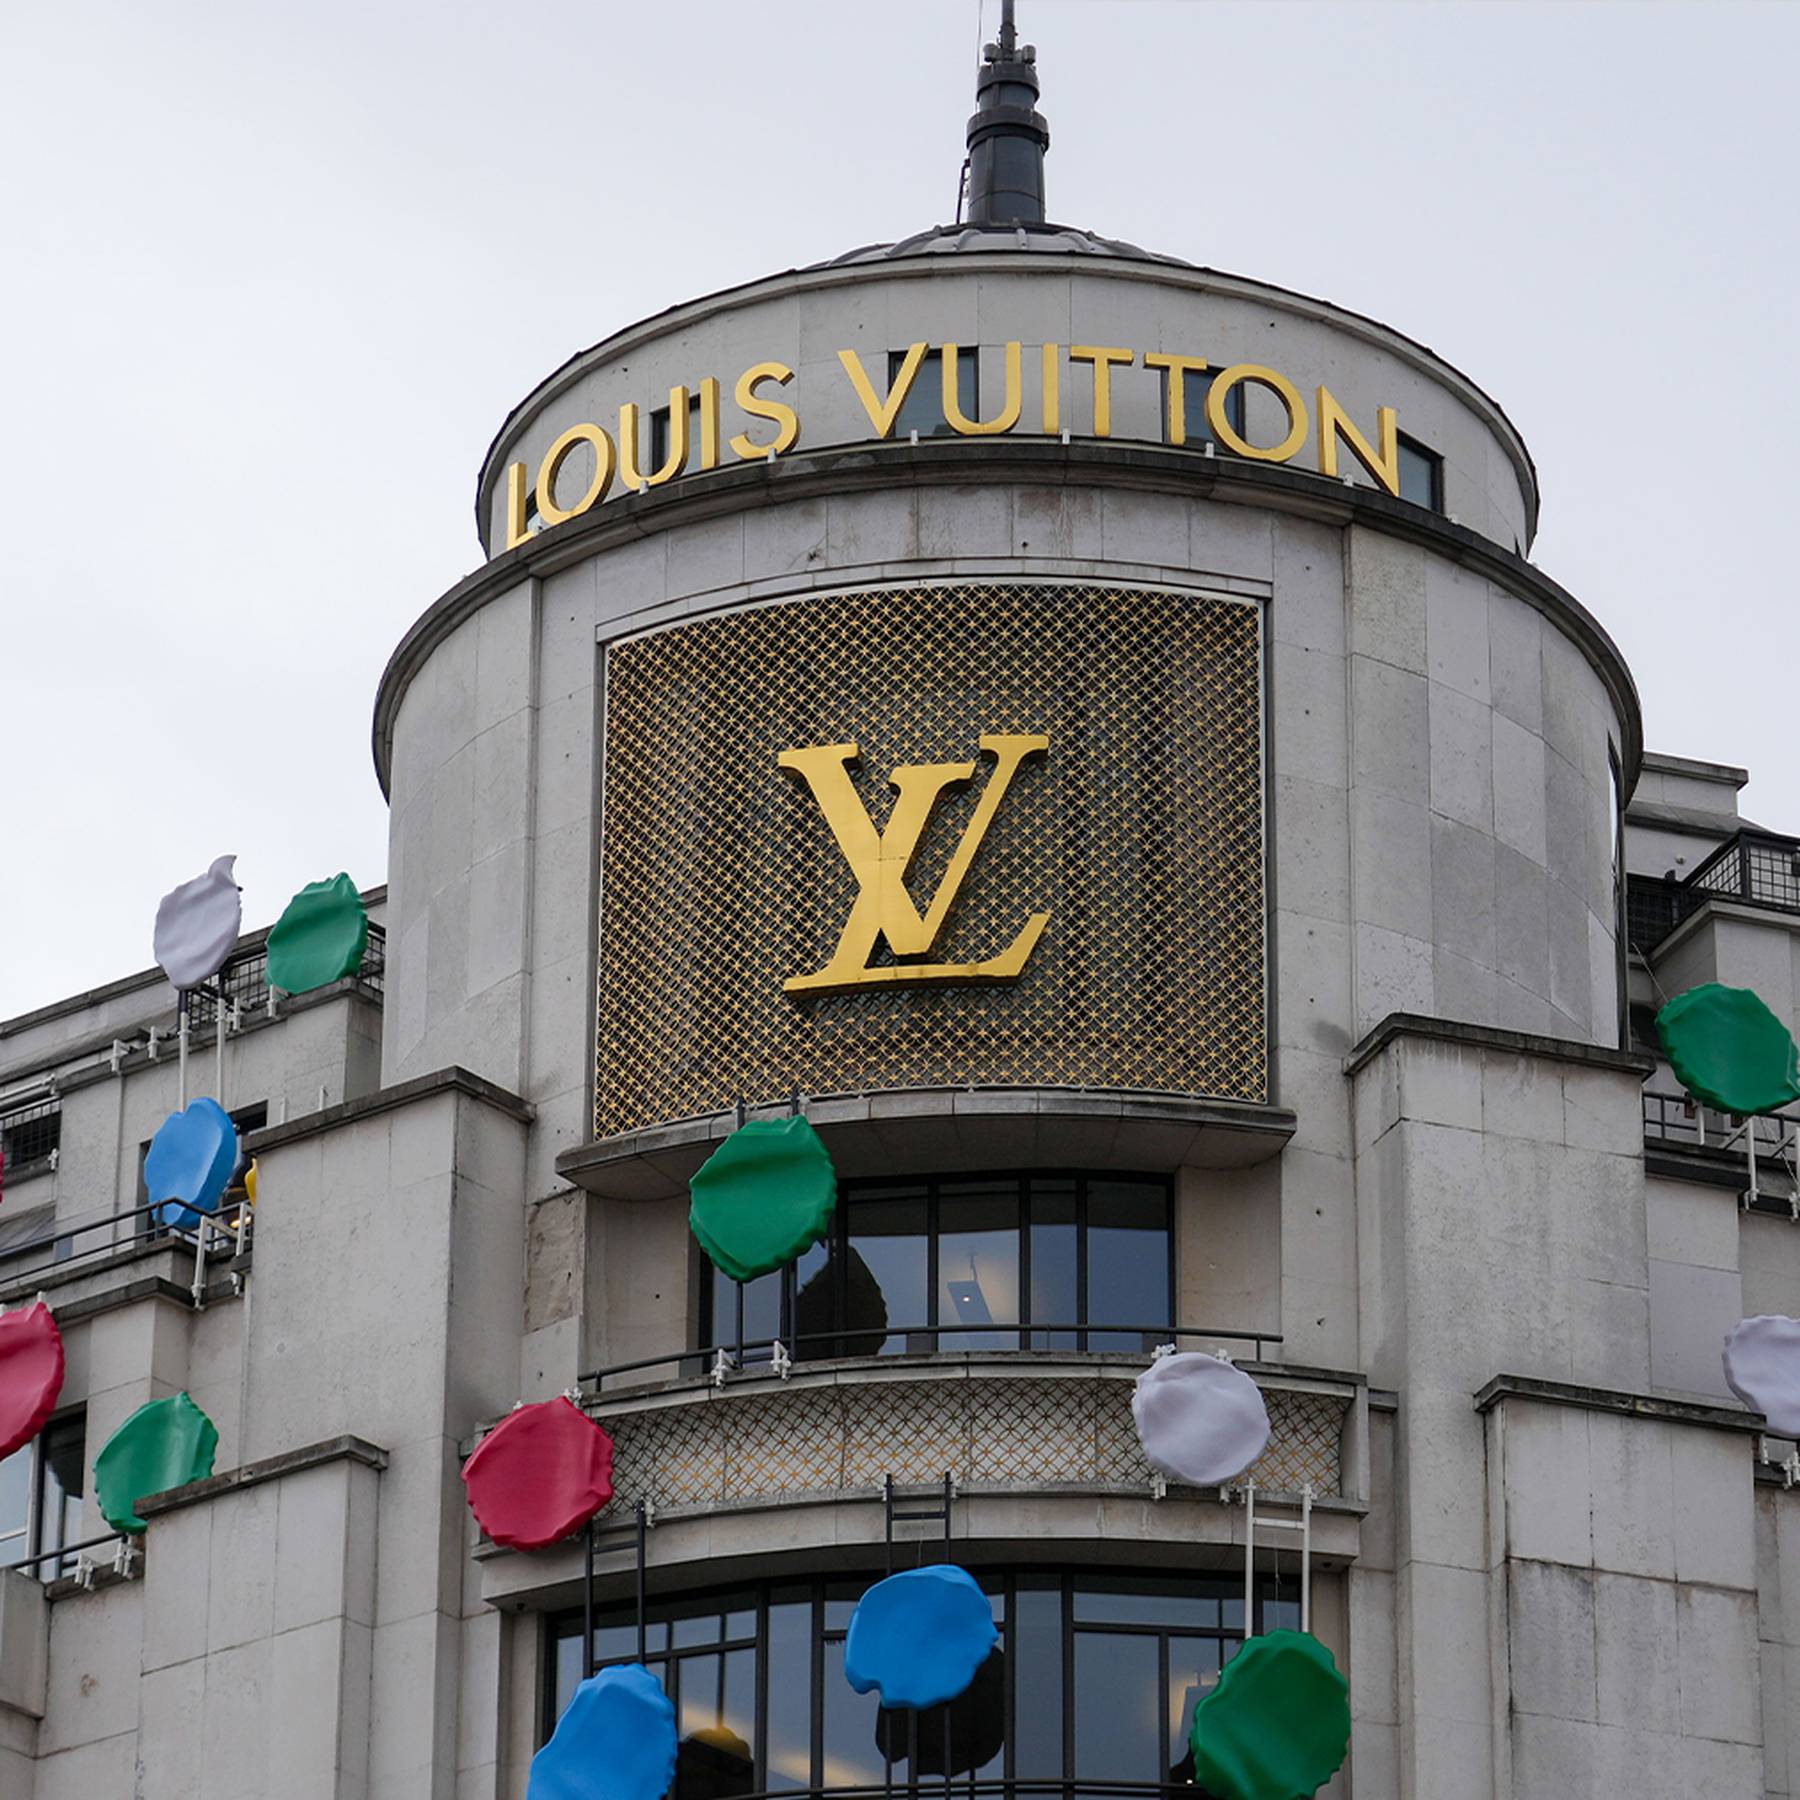 Louis Vuitton races to success